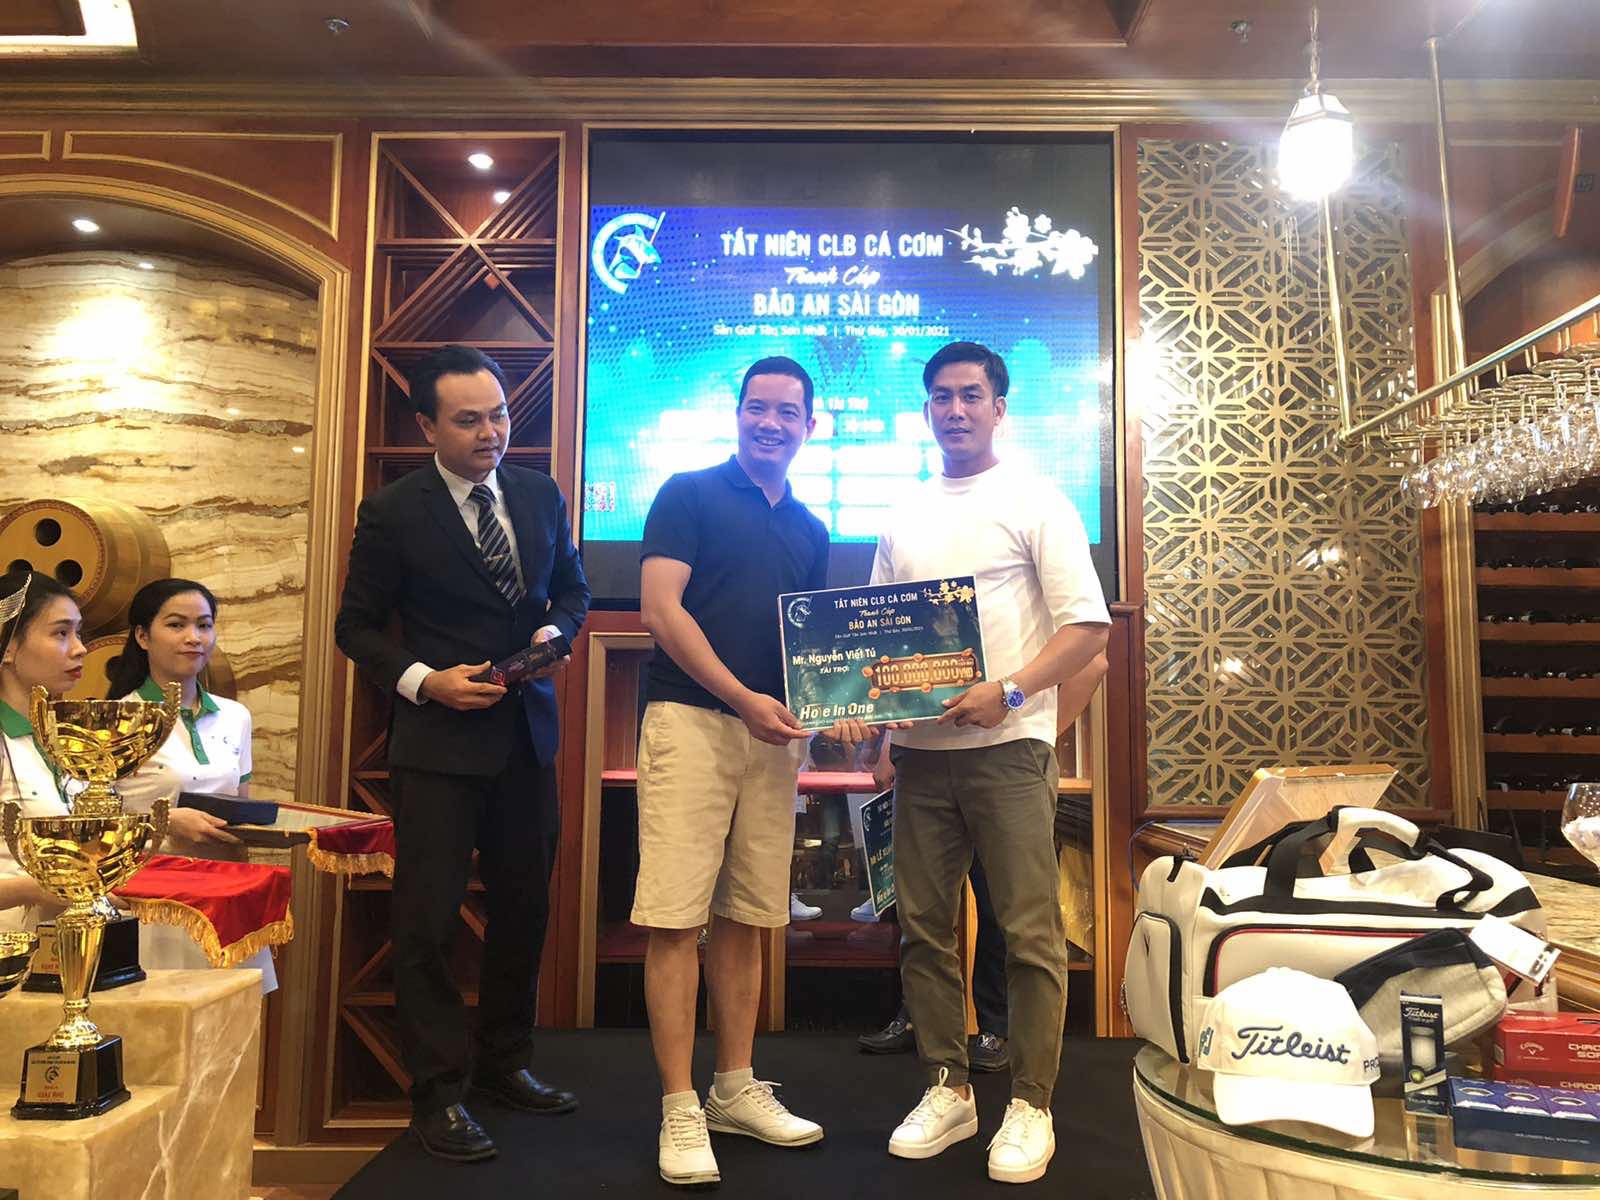 Chiều 1-2, đại diện của VGS Southern, thành viên VGS Group và cũng là đối tác phân phối dịch vụ HIO của VGS Sport đã có buổi trao giải thưởng cho golfer Hứa Thành Văn tại văn phòng PVI khu vực phía Nam